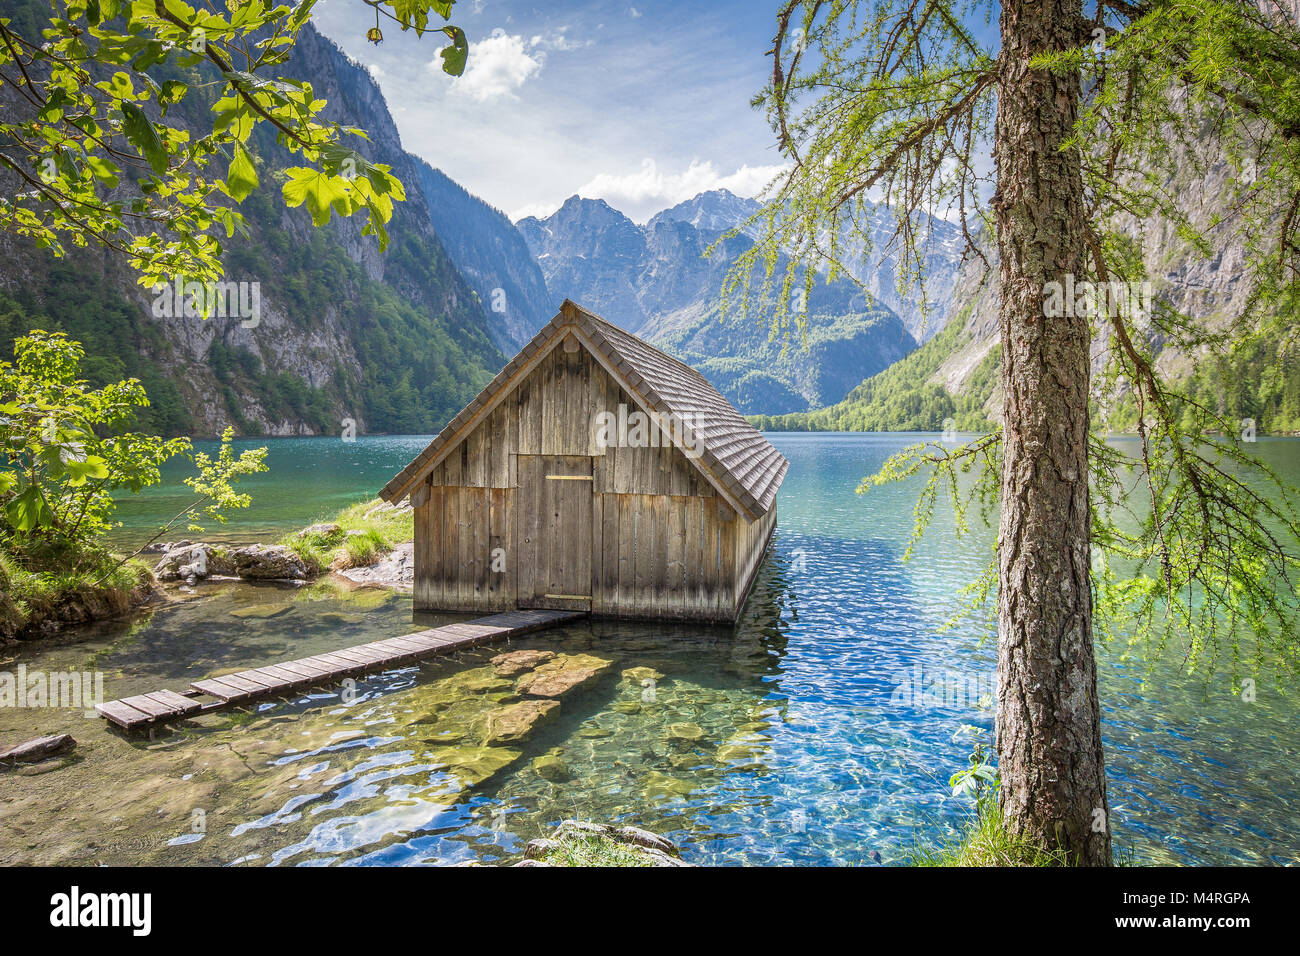 Barca di legno tradizionale casa sulle rive del famoso lago Obersee in Nationalpark Berchtesgadener Land in una giornata di sole in estate, Baviera, Germania Foto Stock